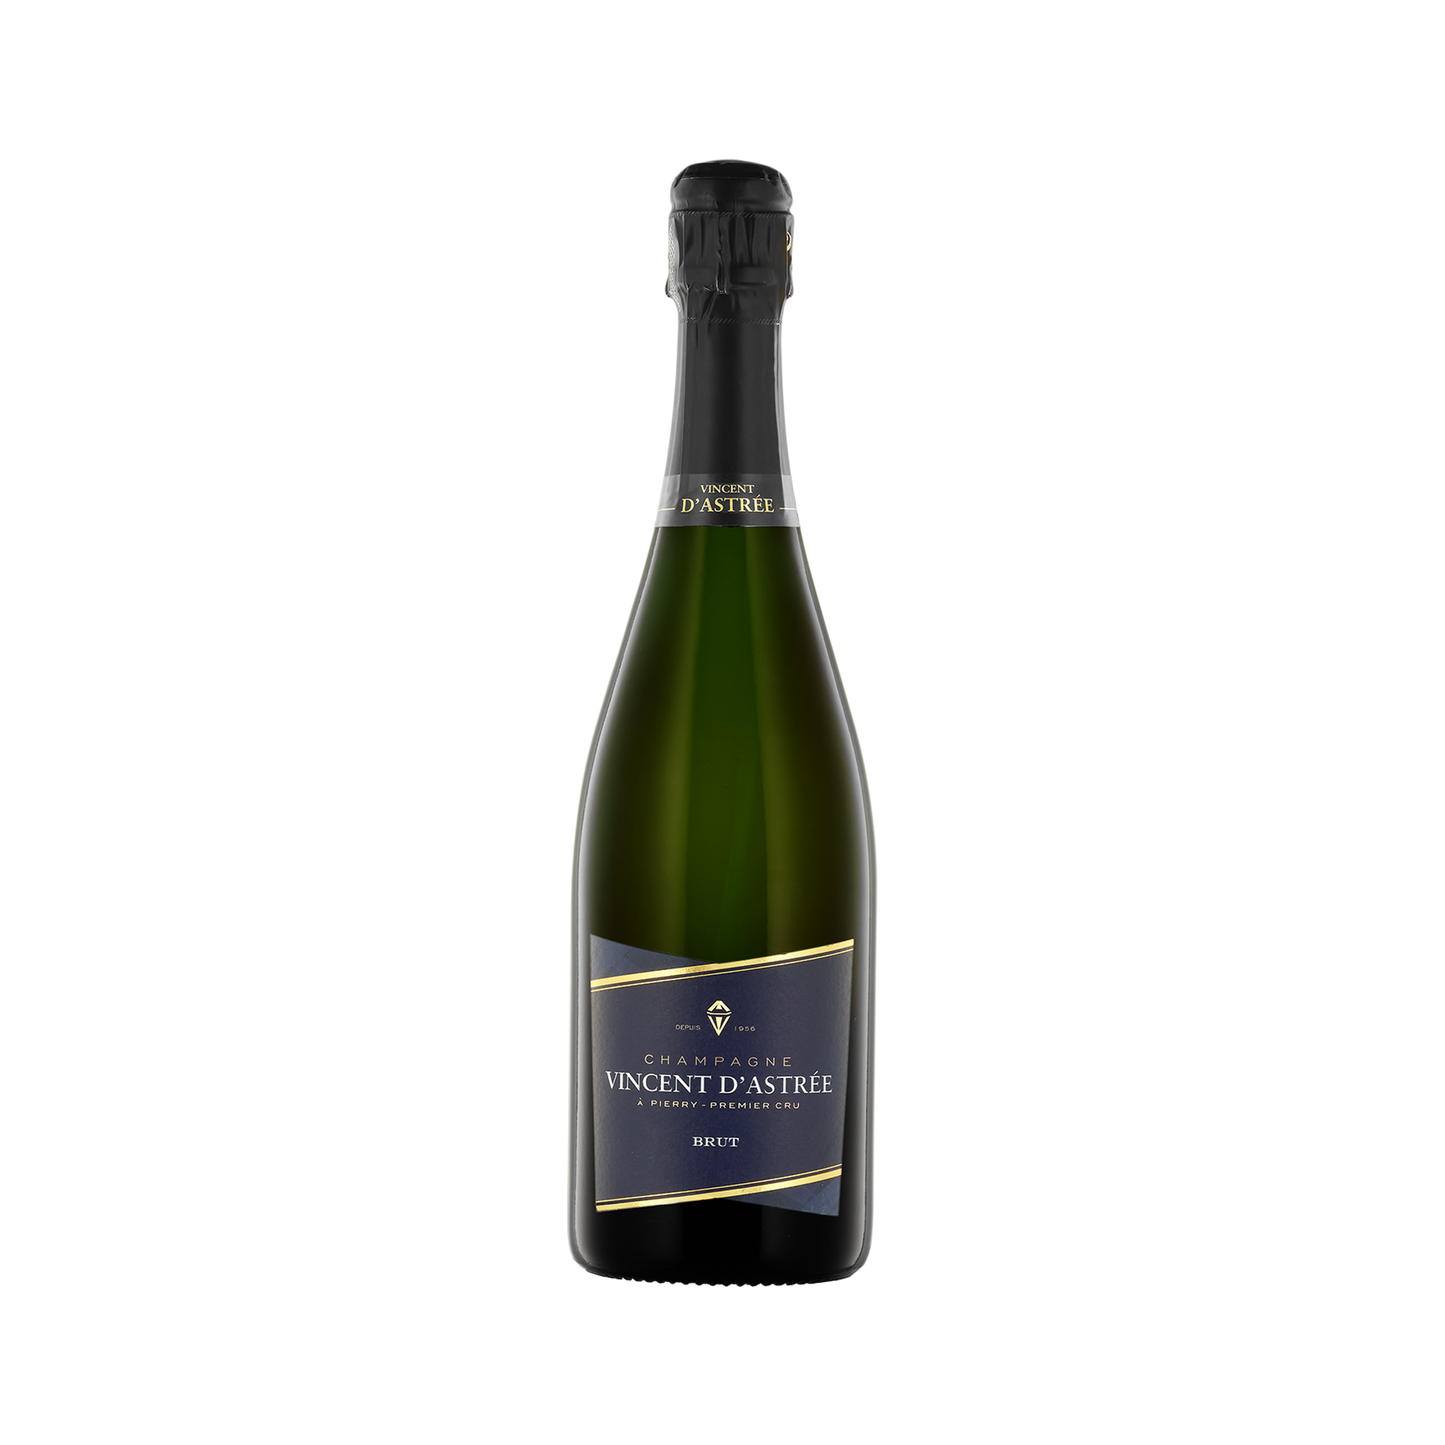 A bottle of Vincent d'Astree Brut Champagne Premier Cru